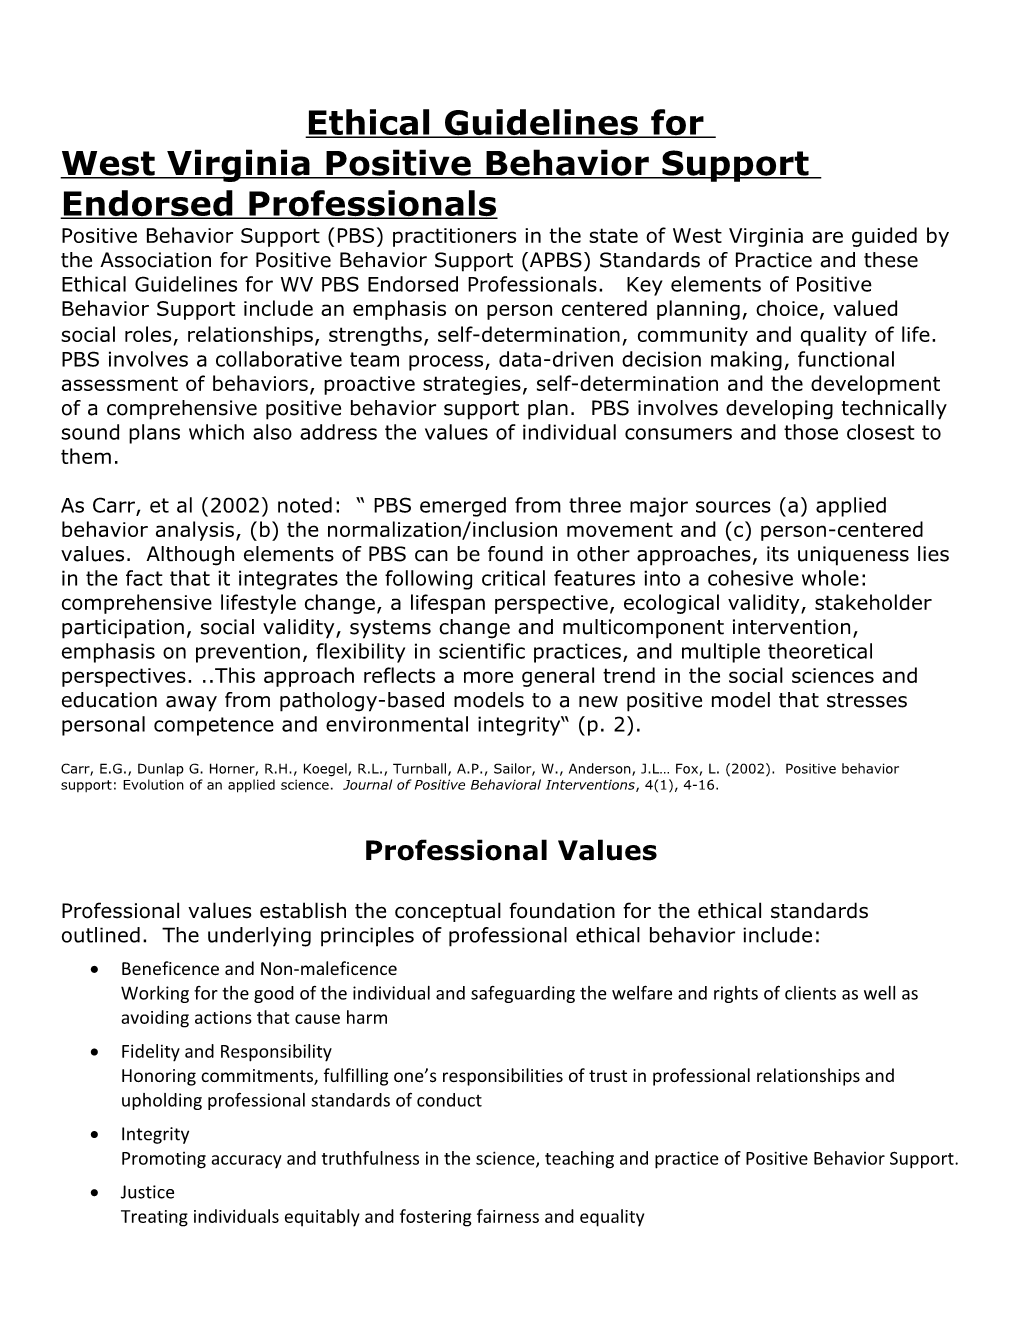 West Virginia Positive Behavior Support Endorsed Professionals